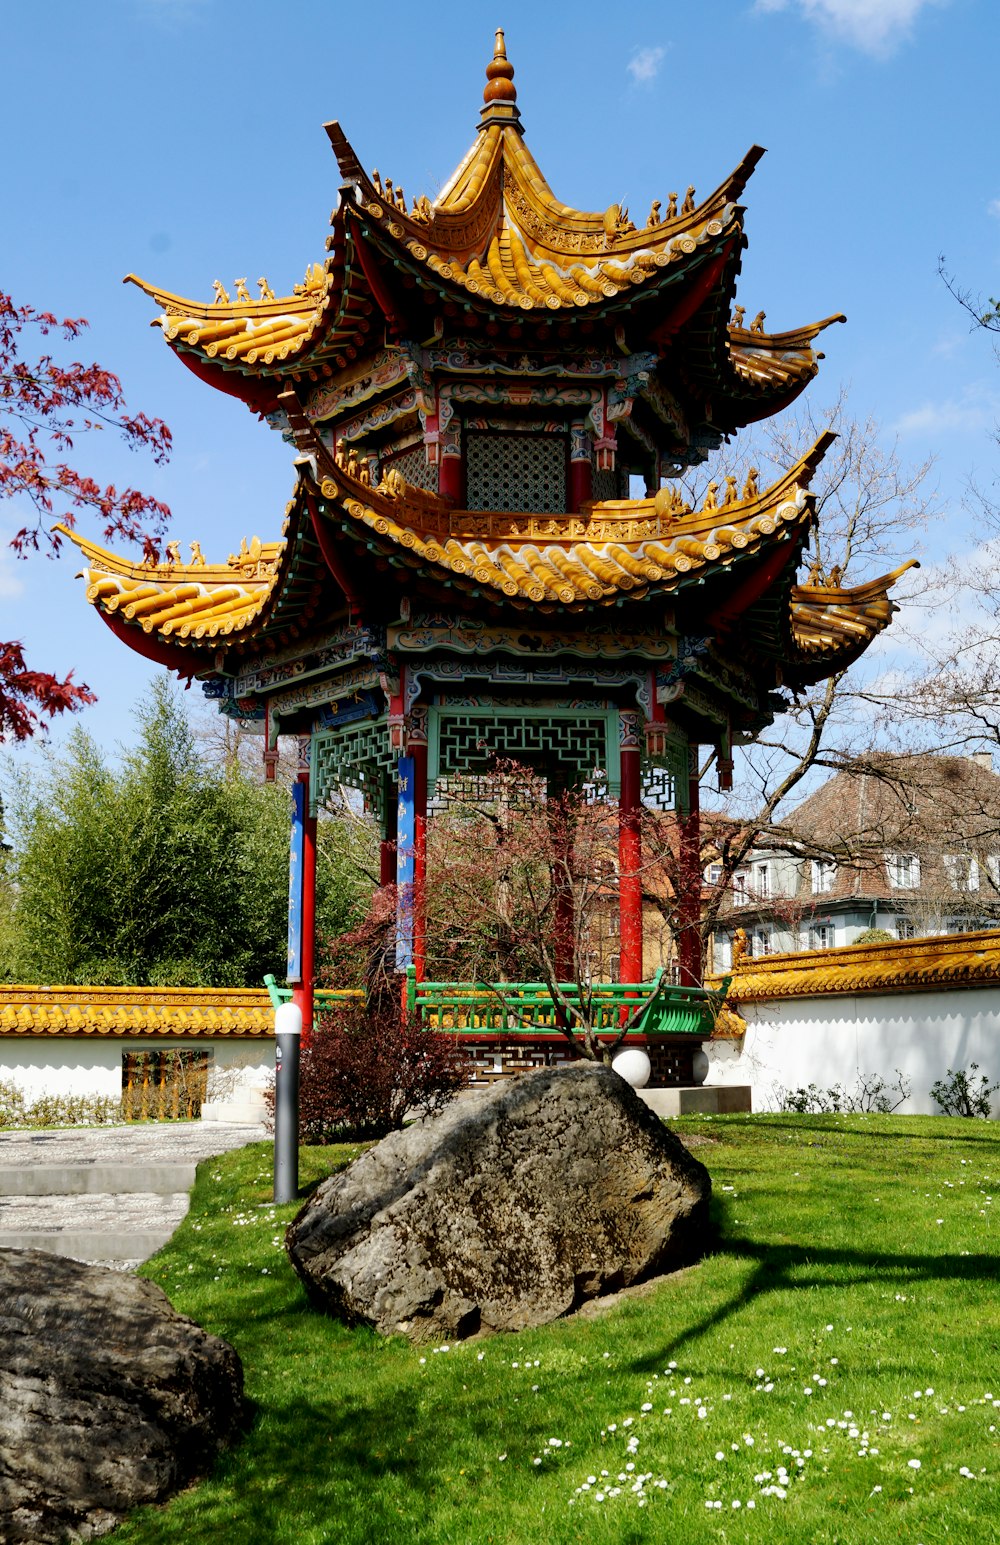 Una pagoda en medio de una zona cubierta de hierba